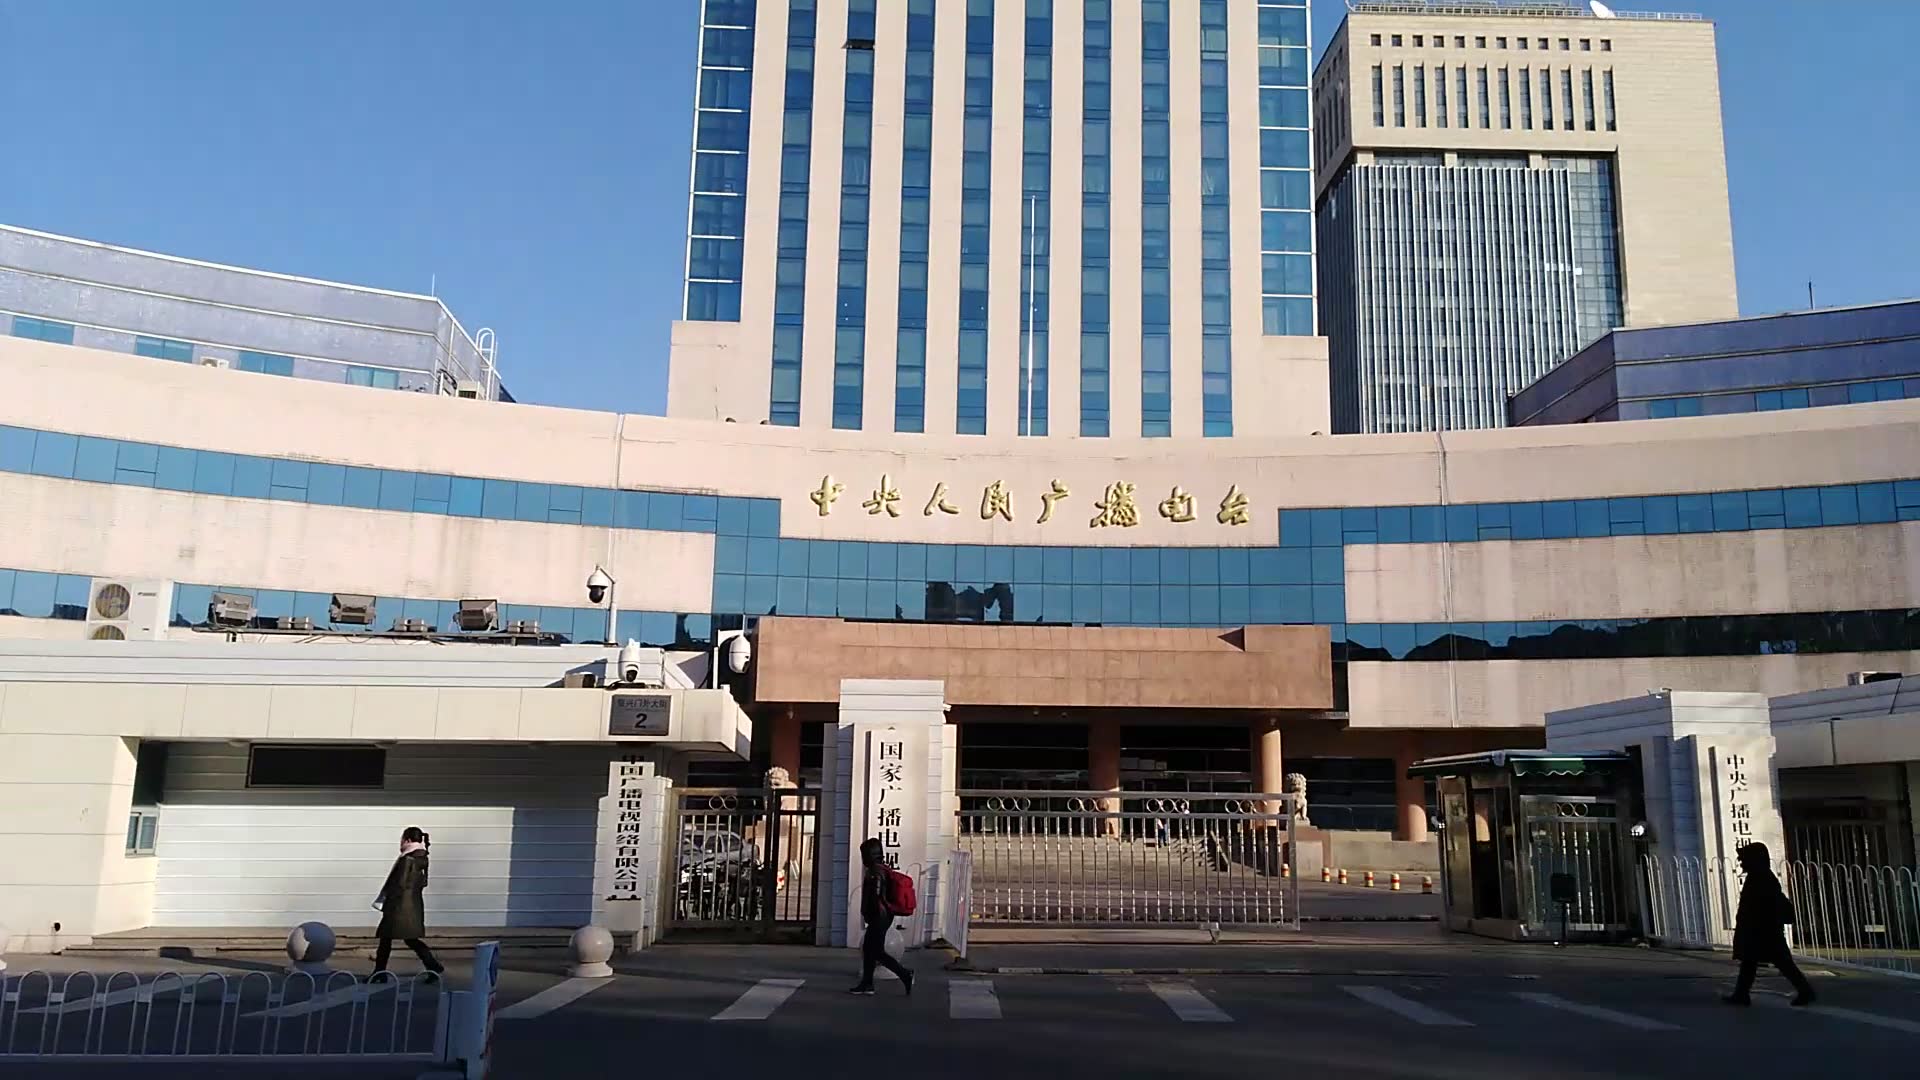 【up主实拍】2019年最后一天:我在北京,实拍中央人民广播电台大楼